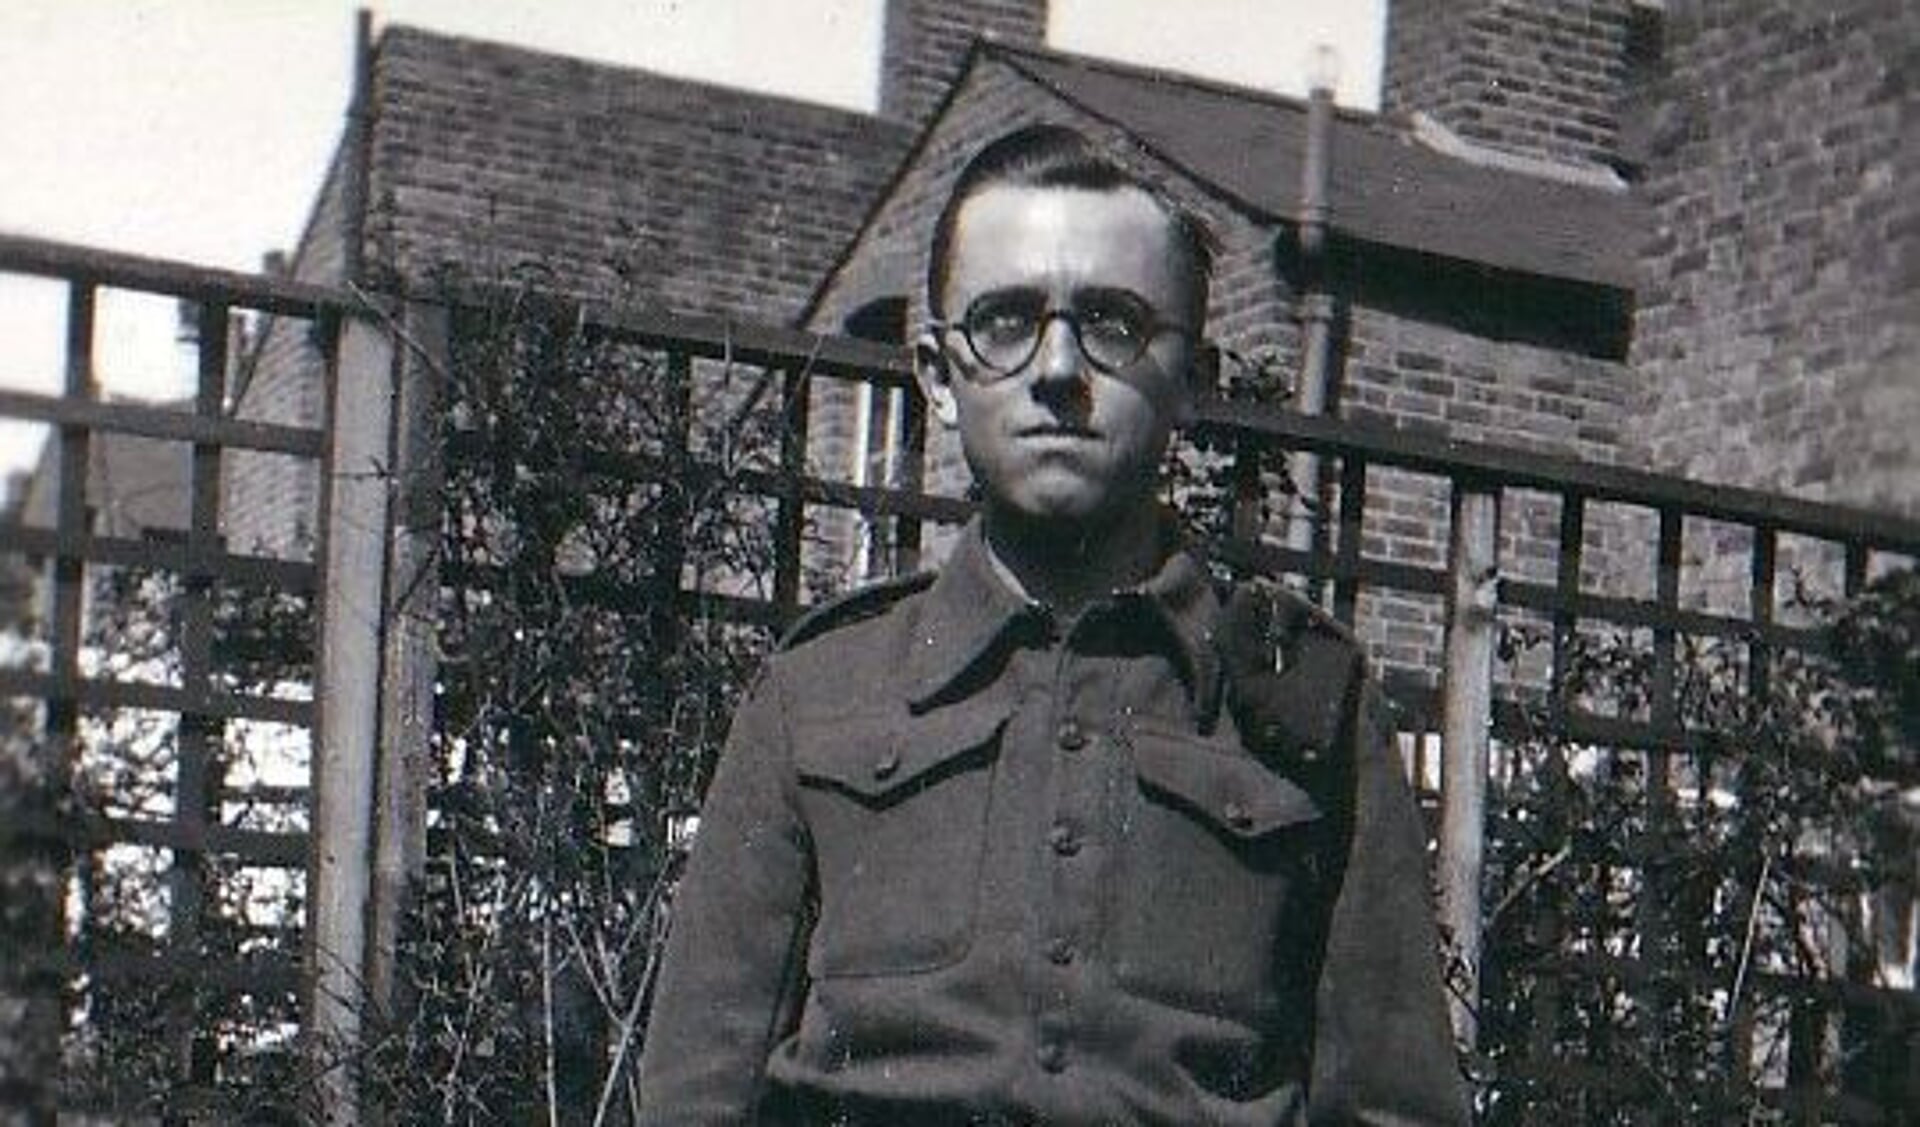 Rifleman Kenneth William Warren (22) van het 12th Battalion Kings Royal Rifle Corps sneuvelde bij de bevrijding van Silvolde. Foto: familiearchief